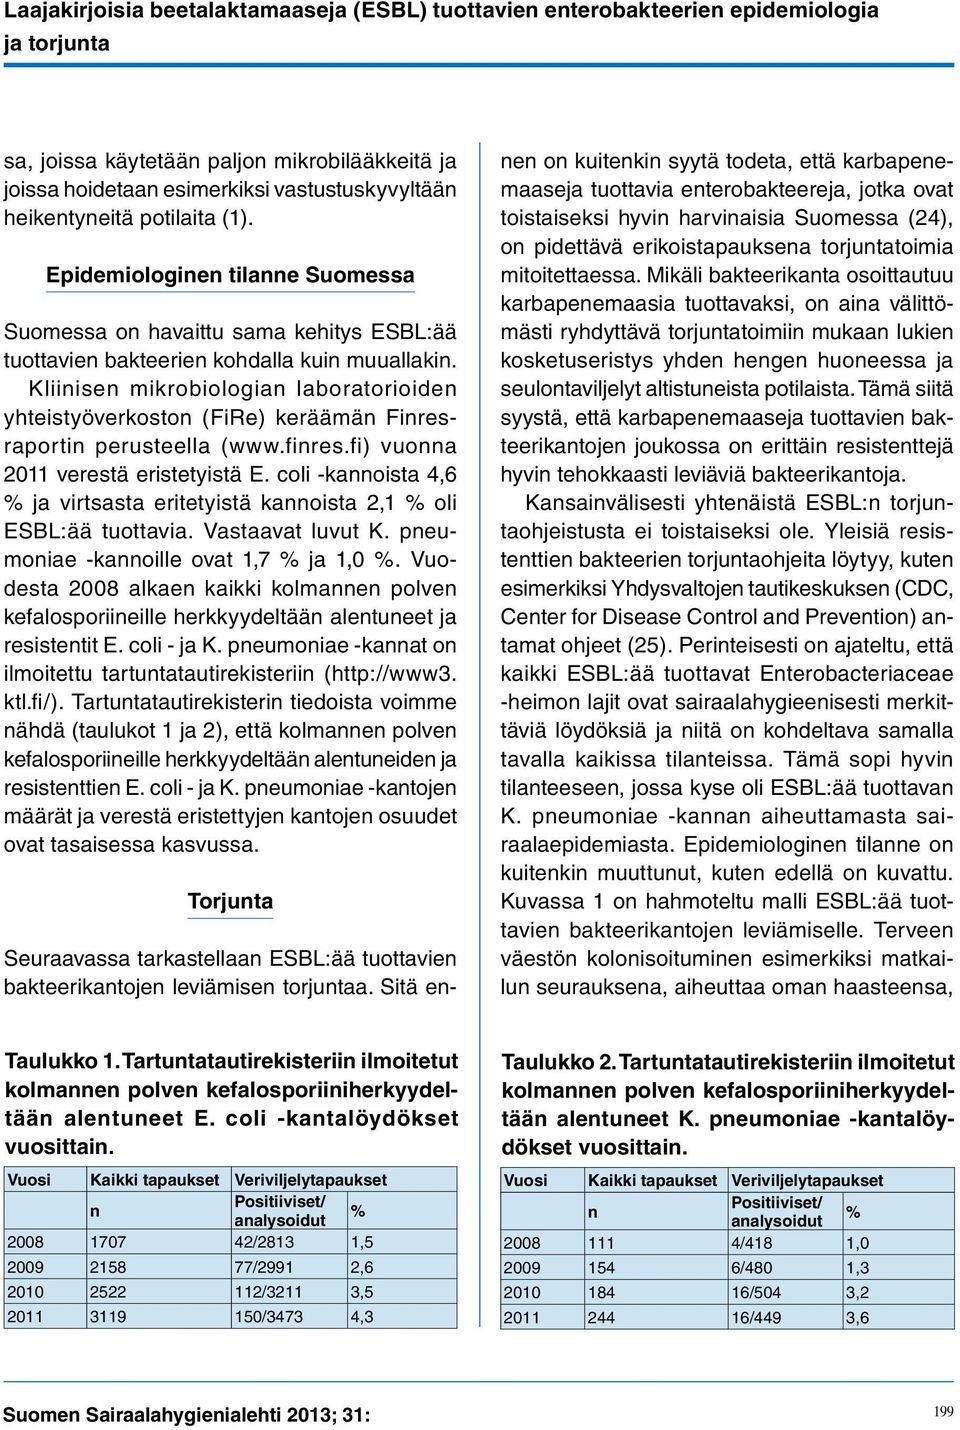 Kliinisen mikrobiologian laboratorioiden yhteistyöverkoston (FiRe) keräämän Finresraportin perusteella (www.finres.fi) vuonna 2011 verestä eristetyistä E.